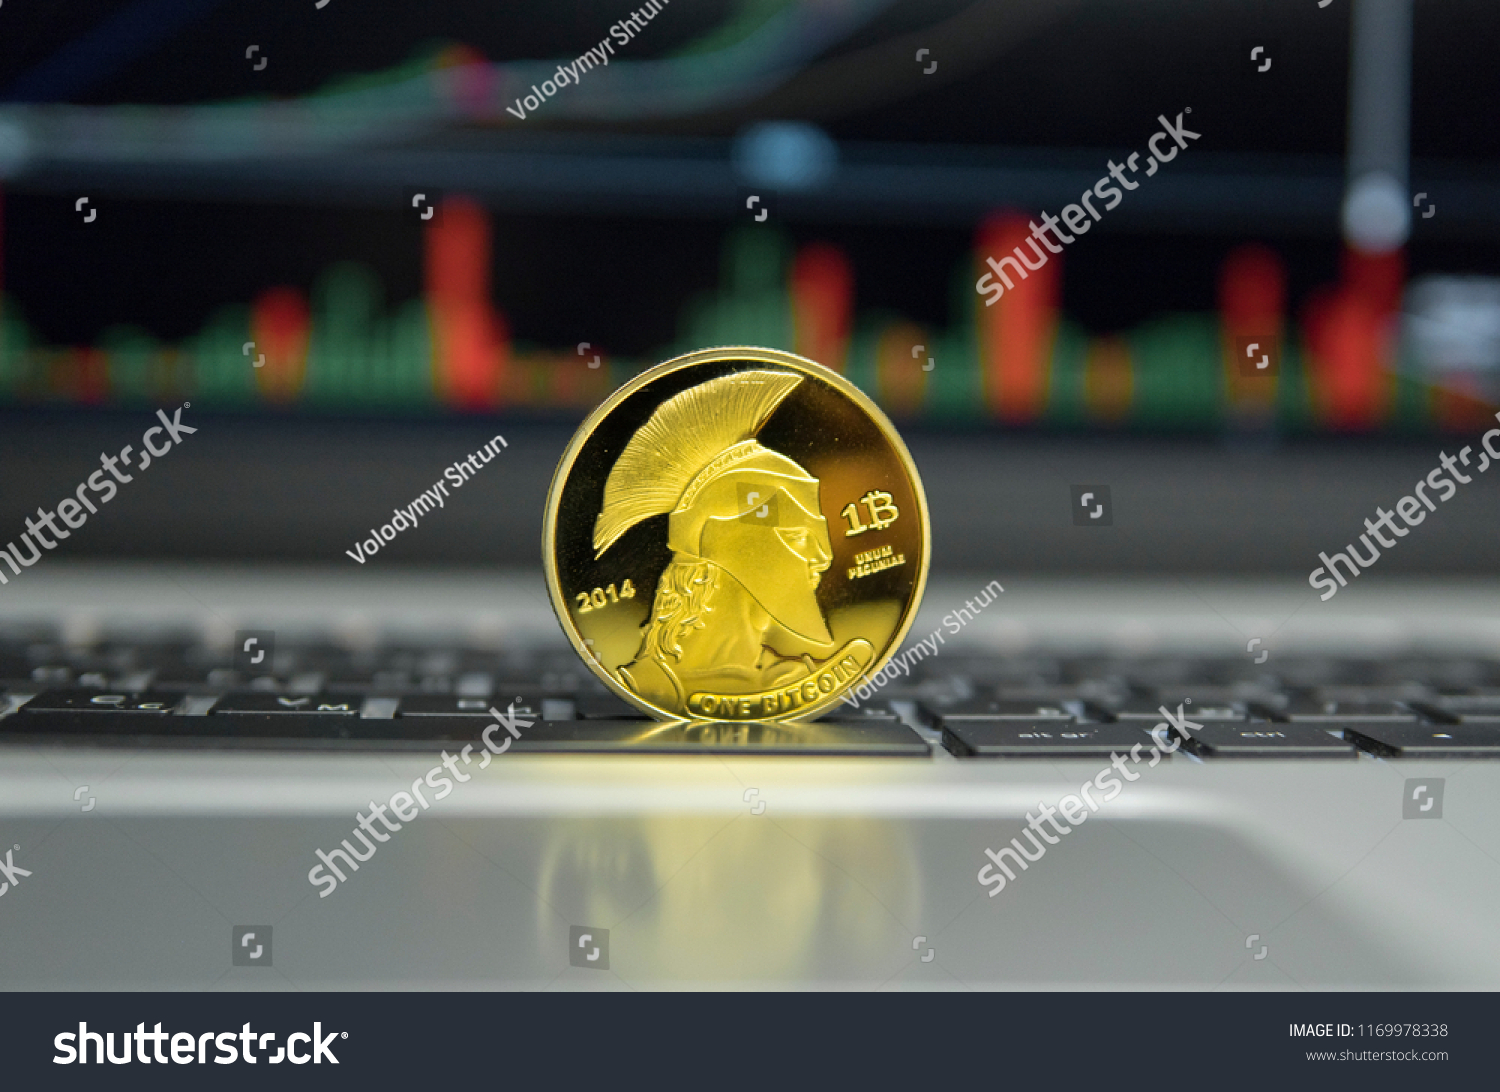 Golden Titan Bitcoin Coin On Silver Stock Photo Edit Now 1169978338 - 